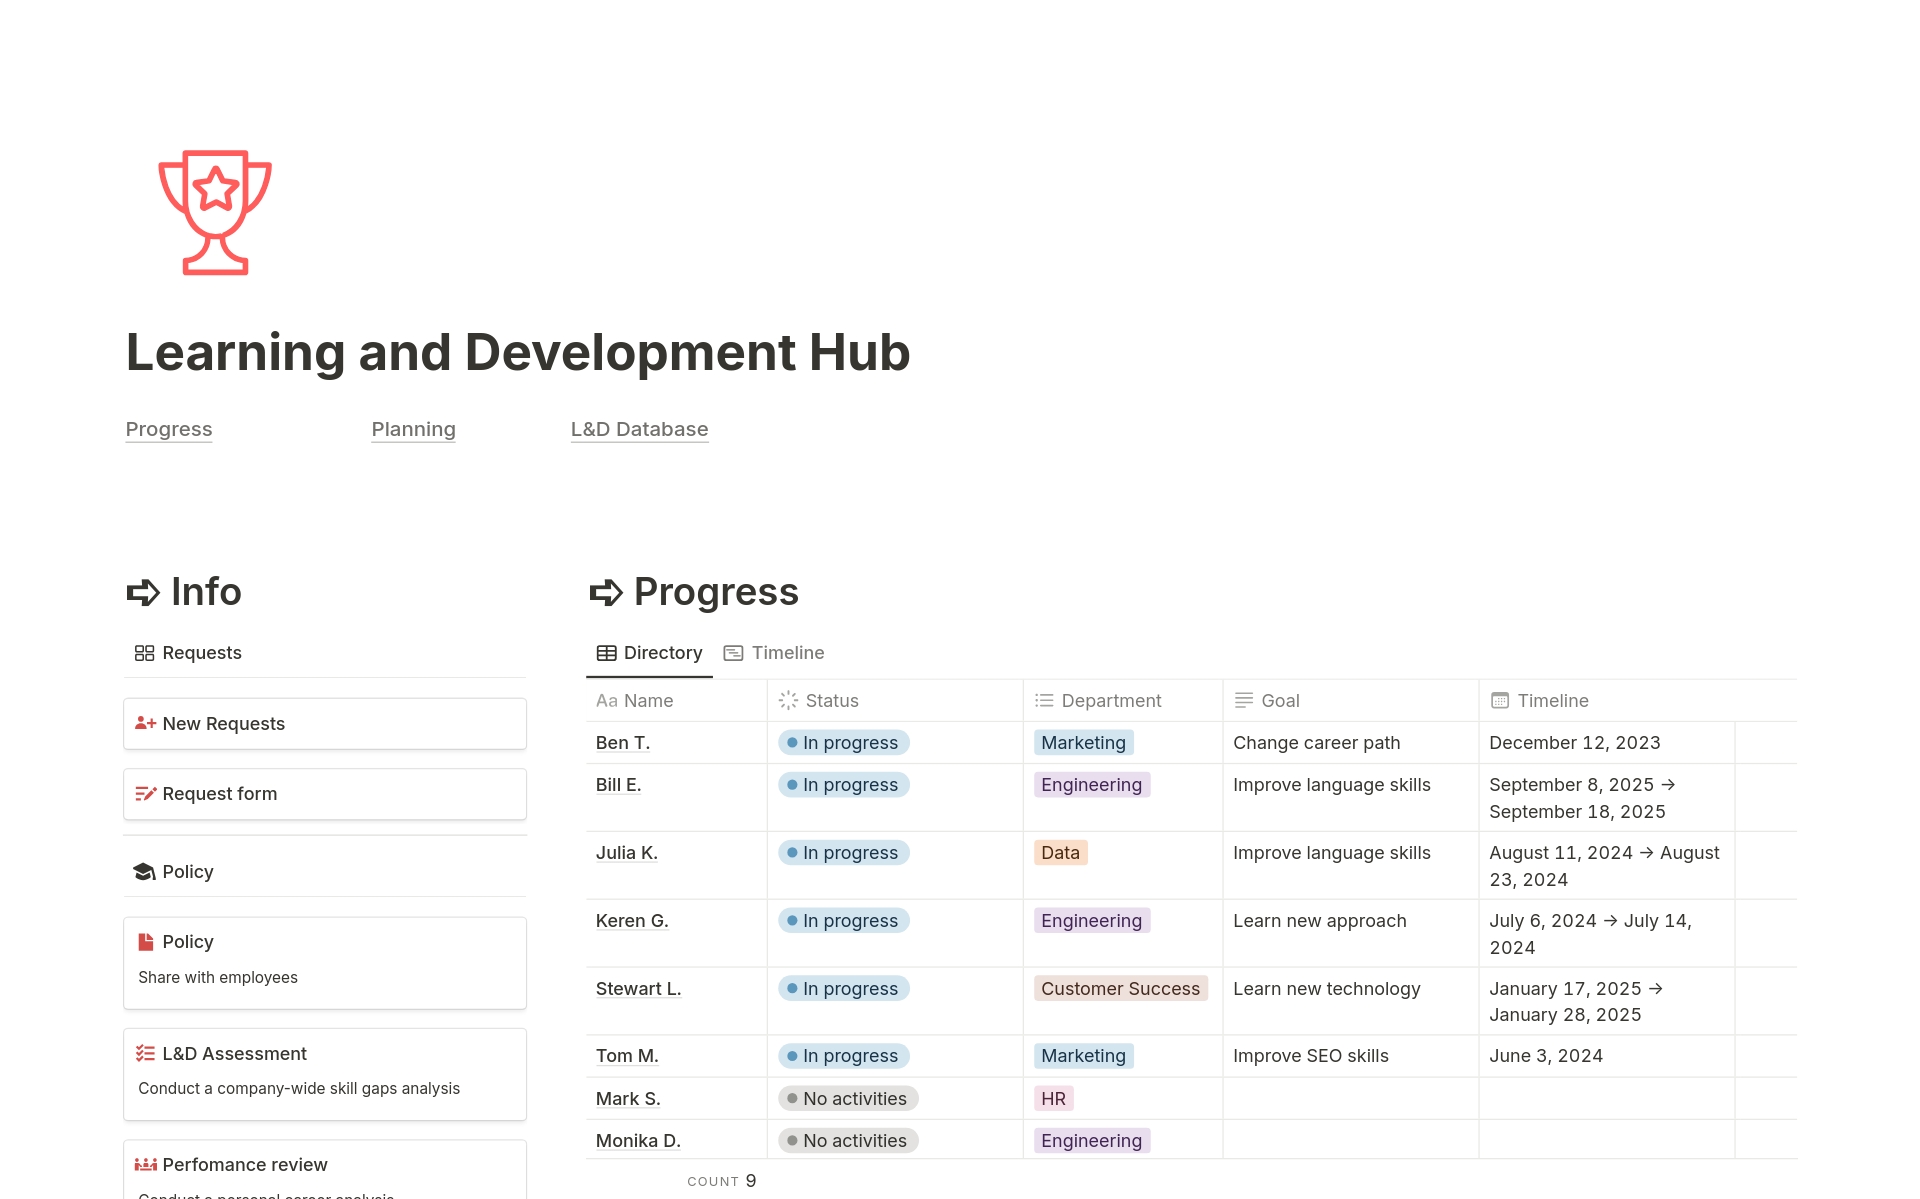 Vista previa de una plantilla para Learning and Development Hub